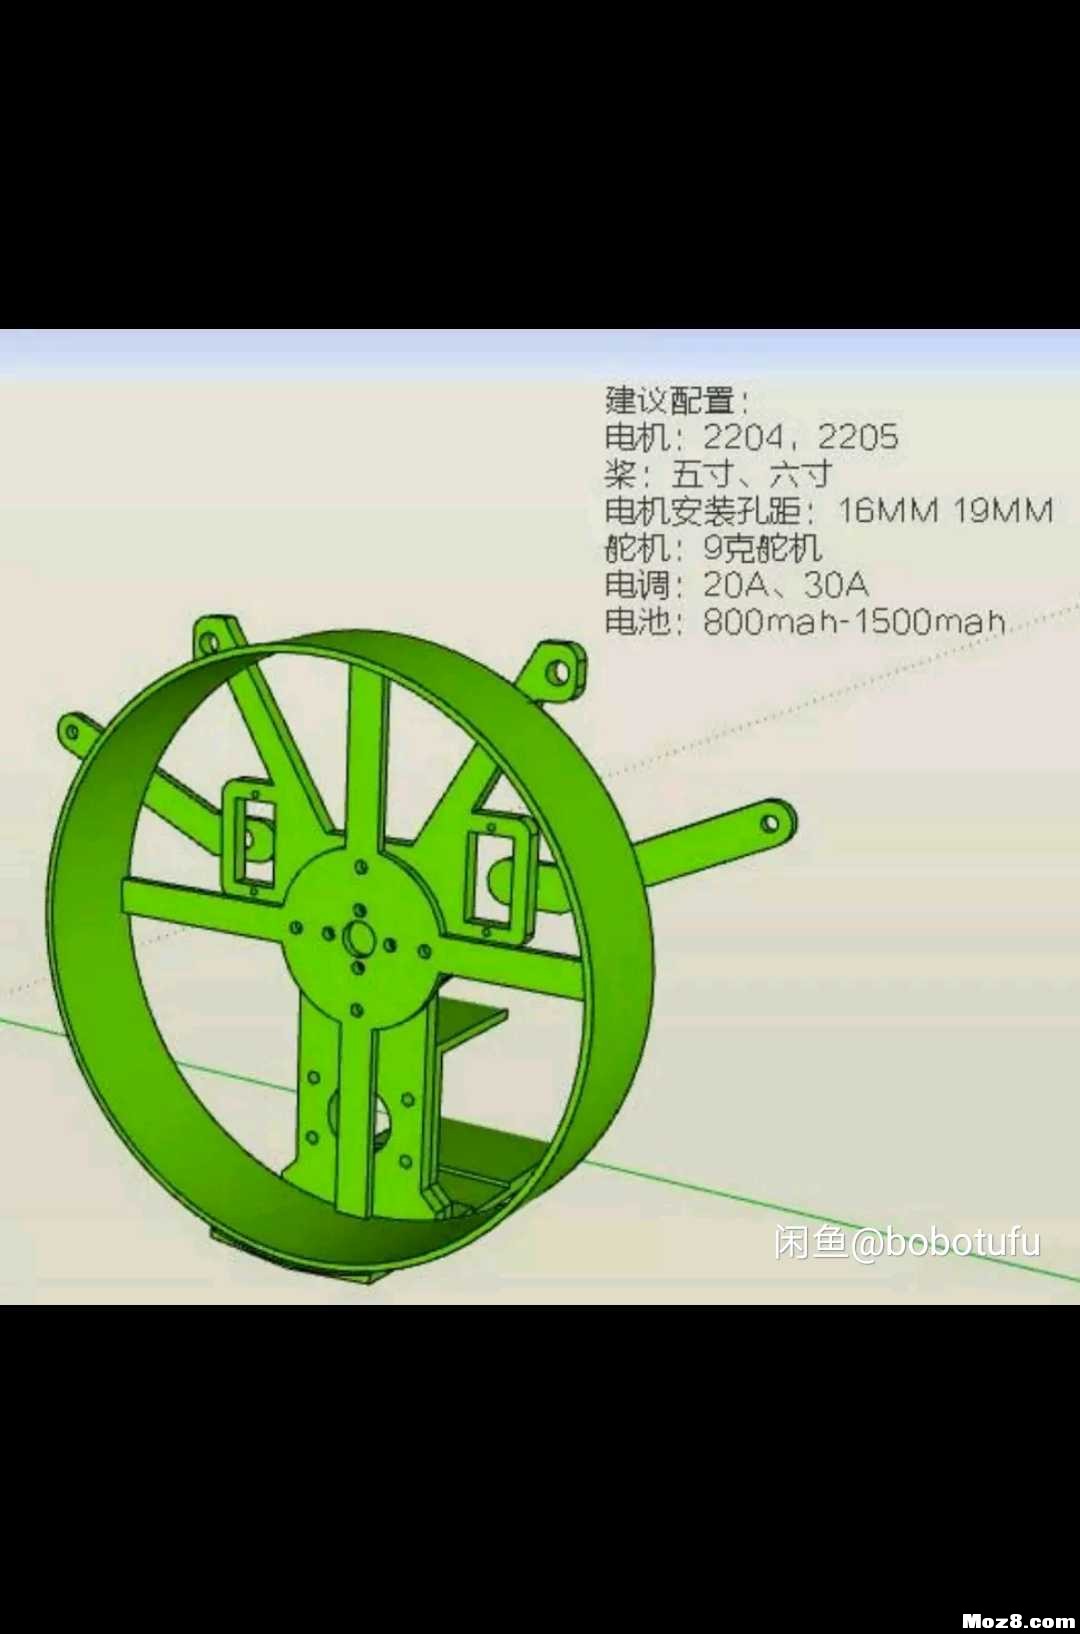 遥控动力伞 3D机架重画 模型,固定翼,舵机,电调,电机 作者:bobotufu 9915 